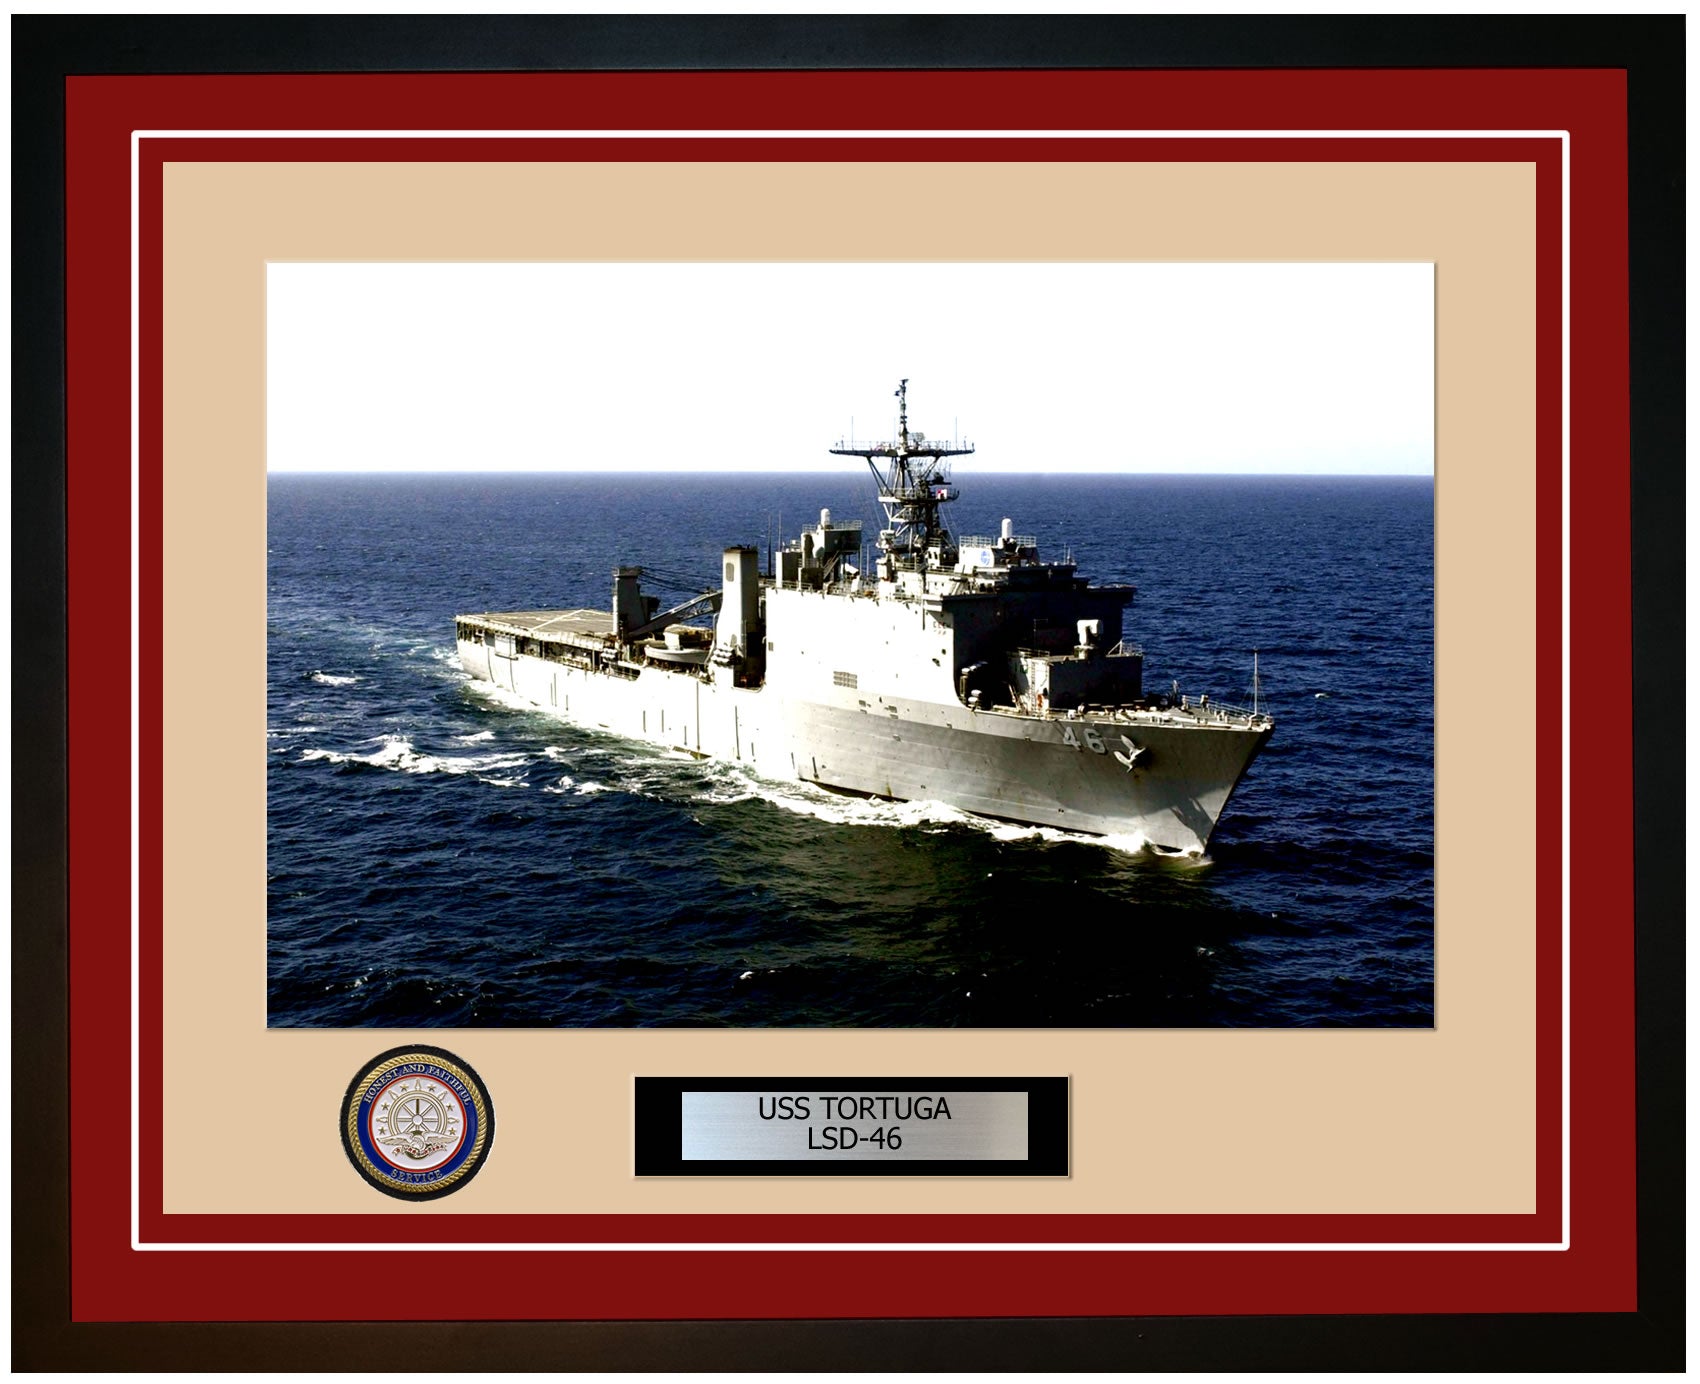 USS Tortuga LSD-46 Framed Navy Ship Photo Burgundy